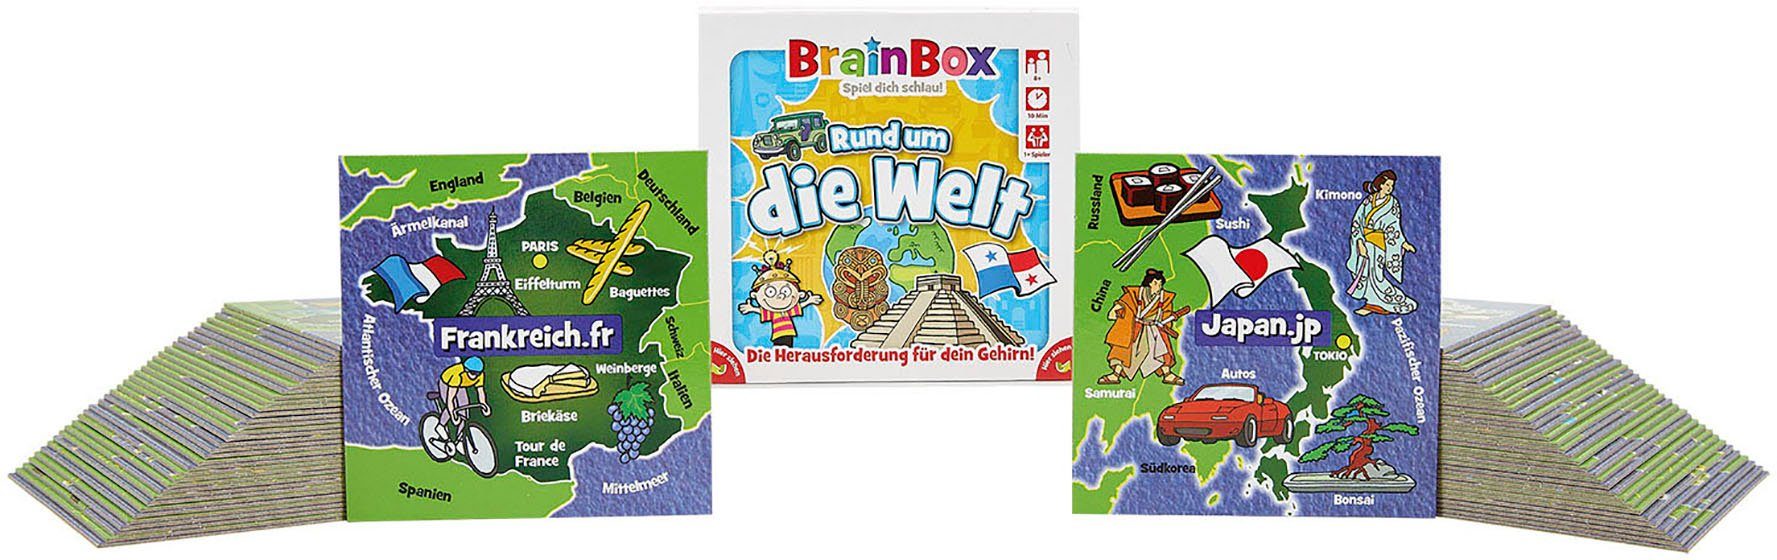 BrainBox Rund um Welt die Spiel,